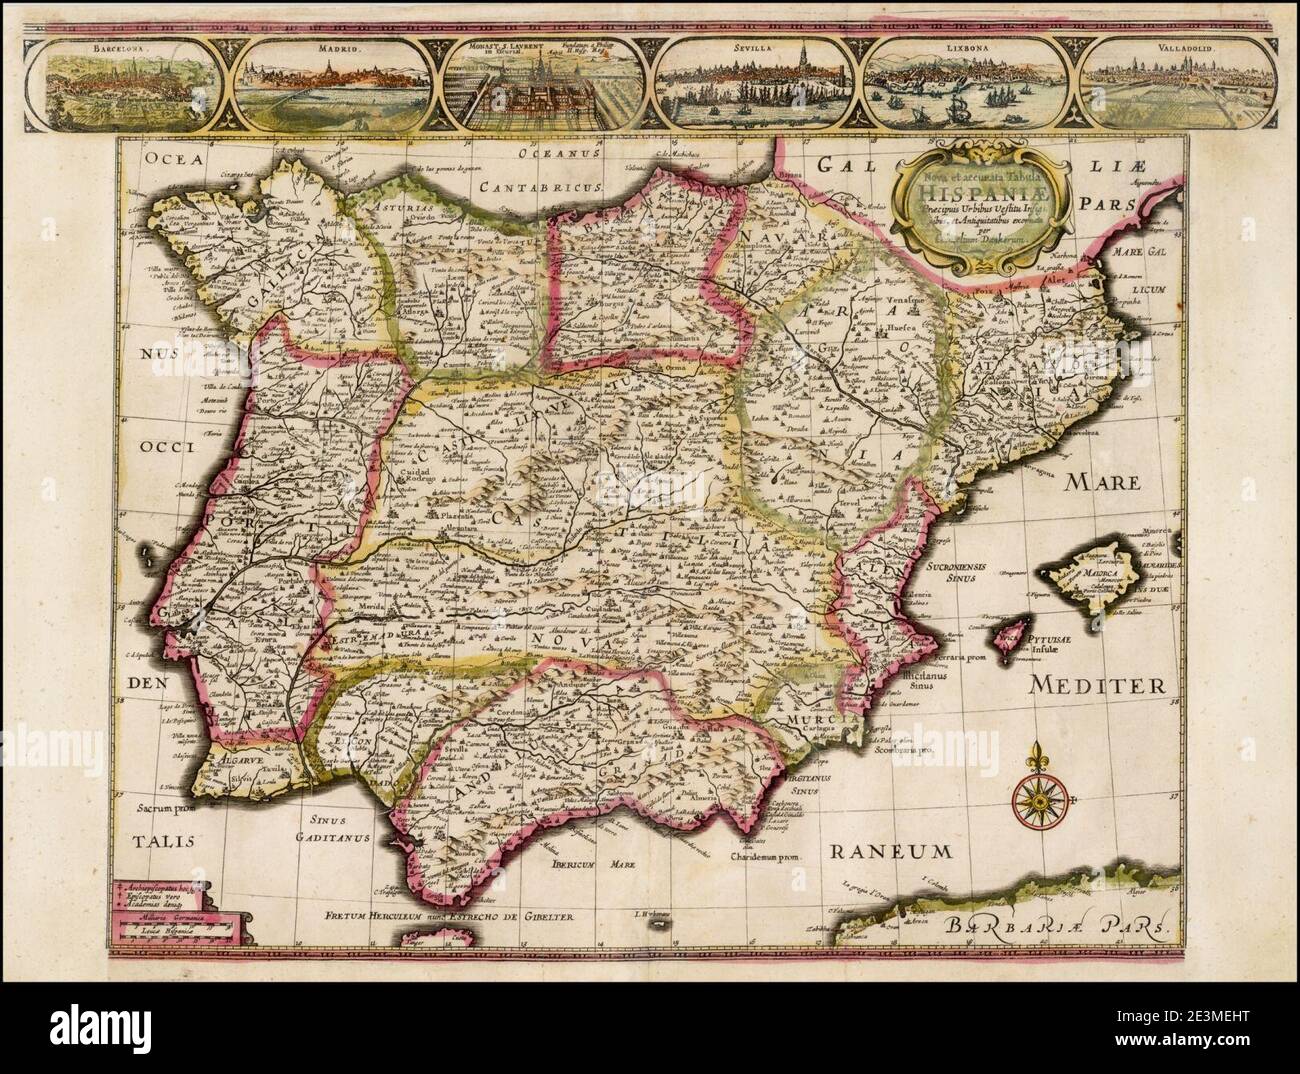 MAPA DE ESPAÑA EN 1640. Stock Photo